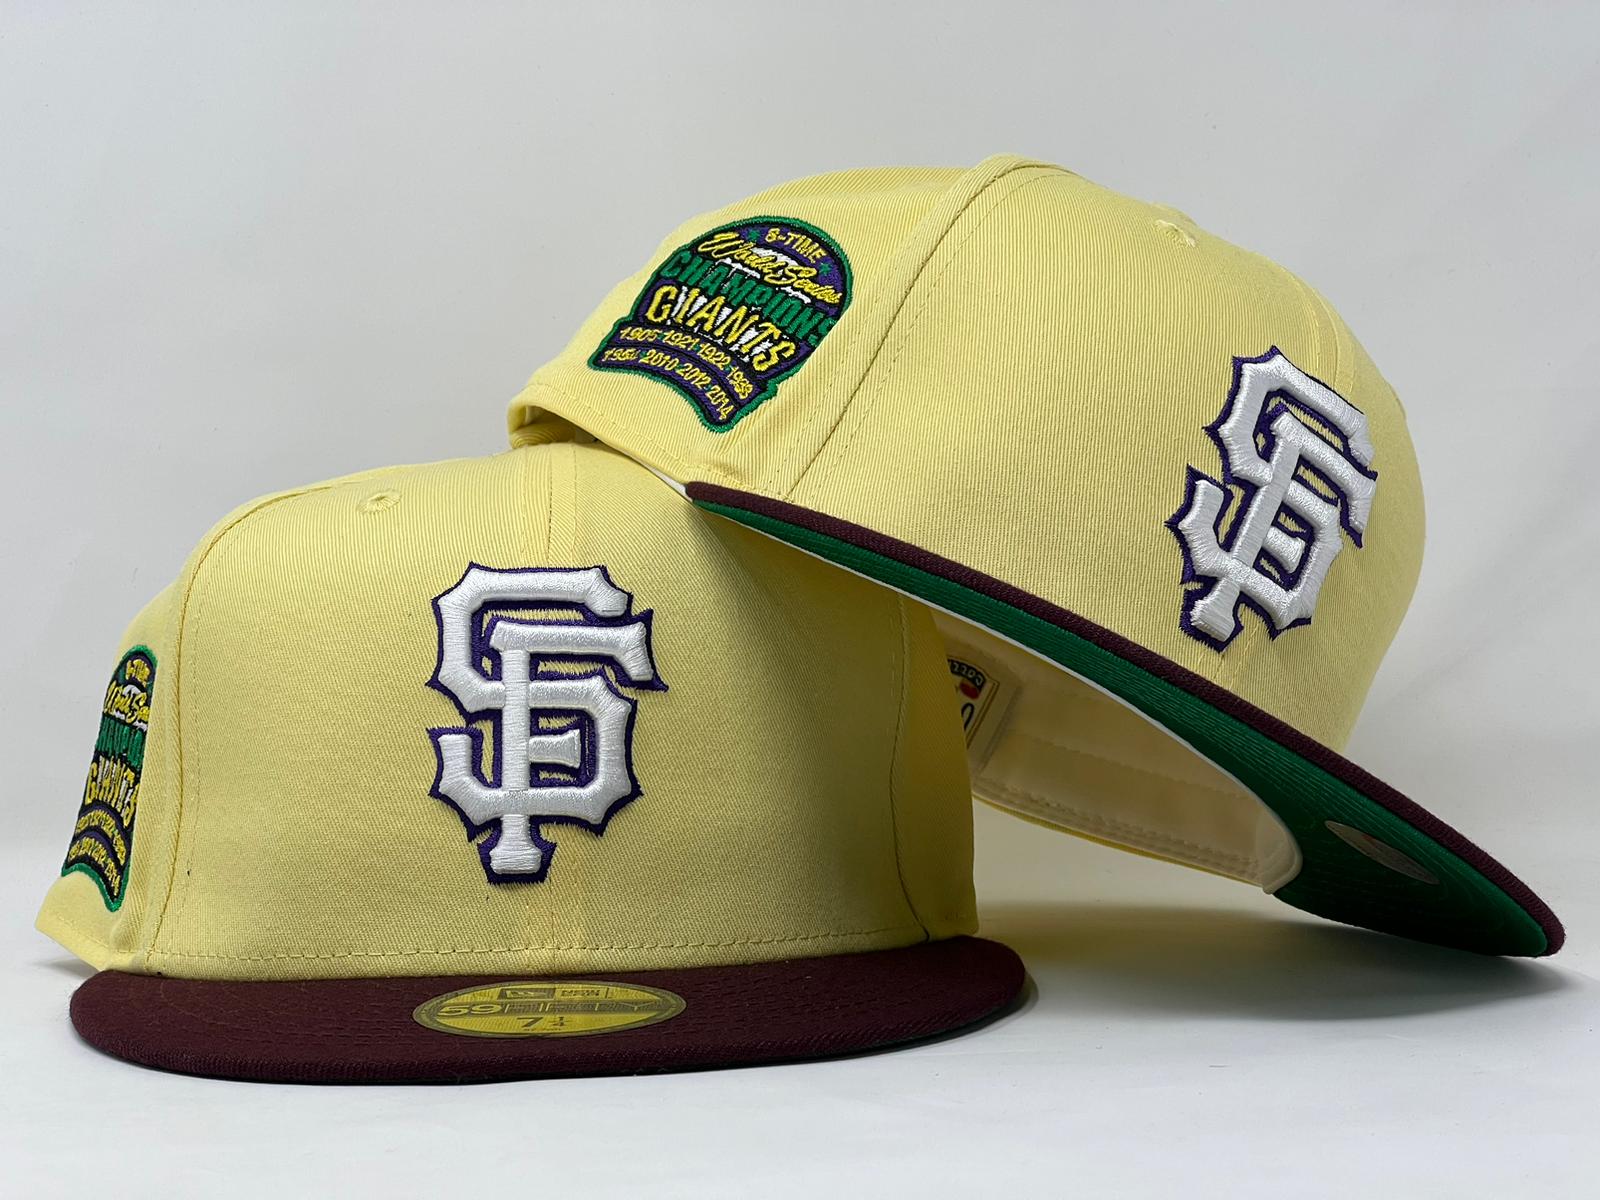 San Francisco Giants Stitch custom Personalized Baseball Jersey -   Worldwide Shipping